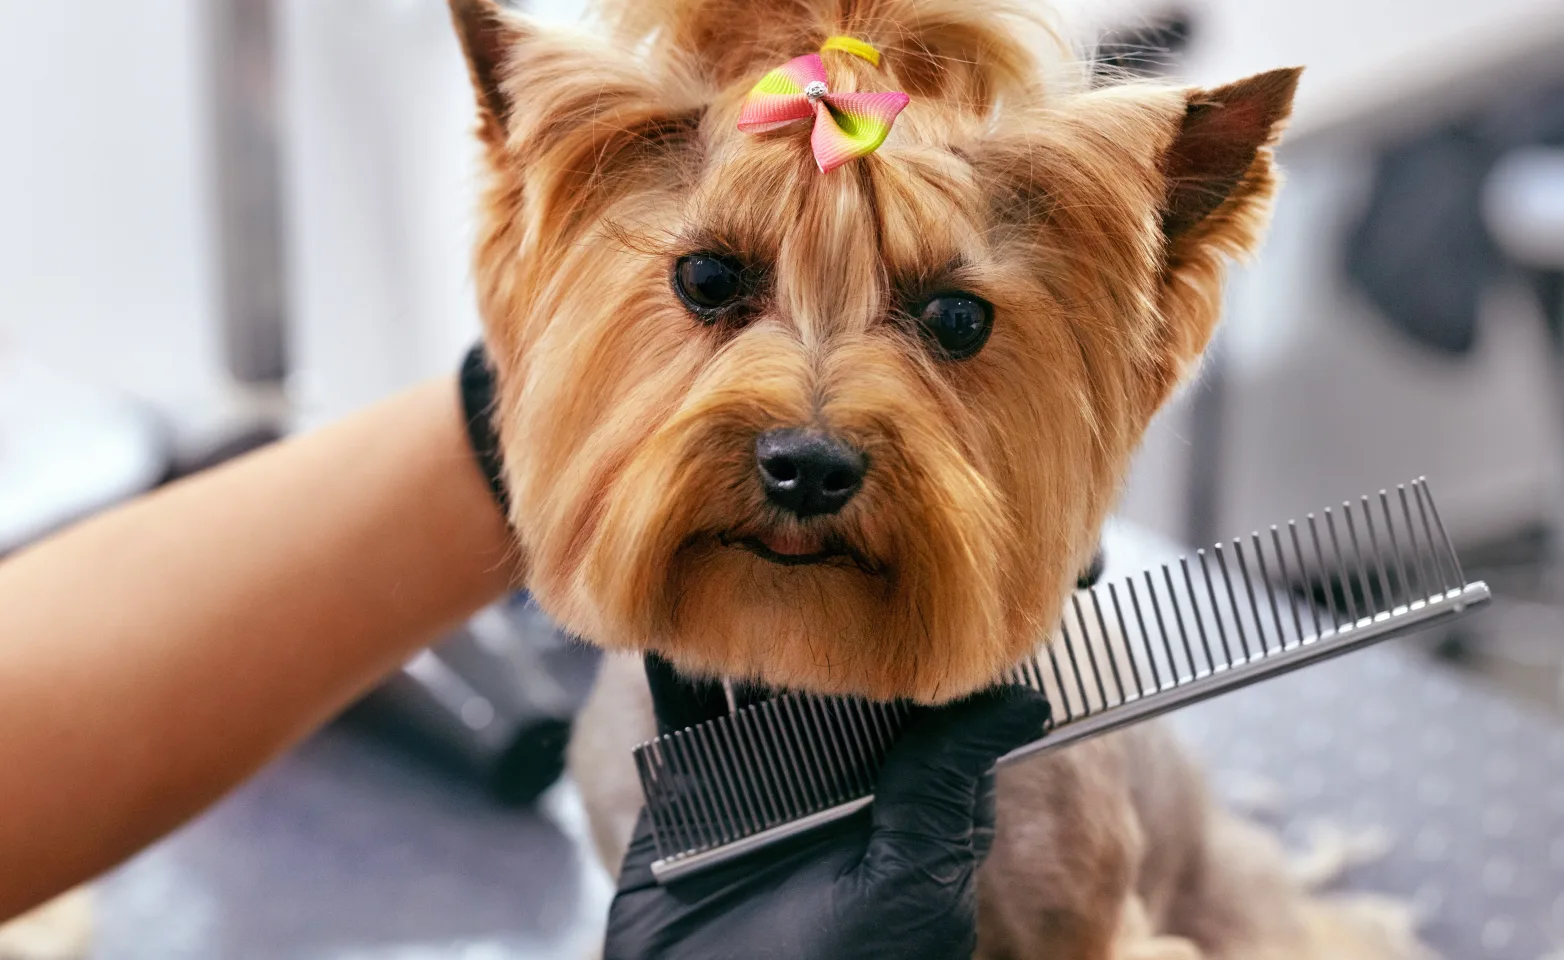 Dog Grooming at Salon 